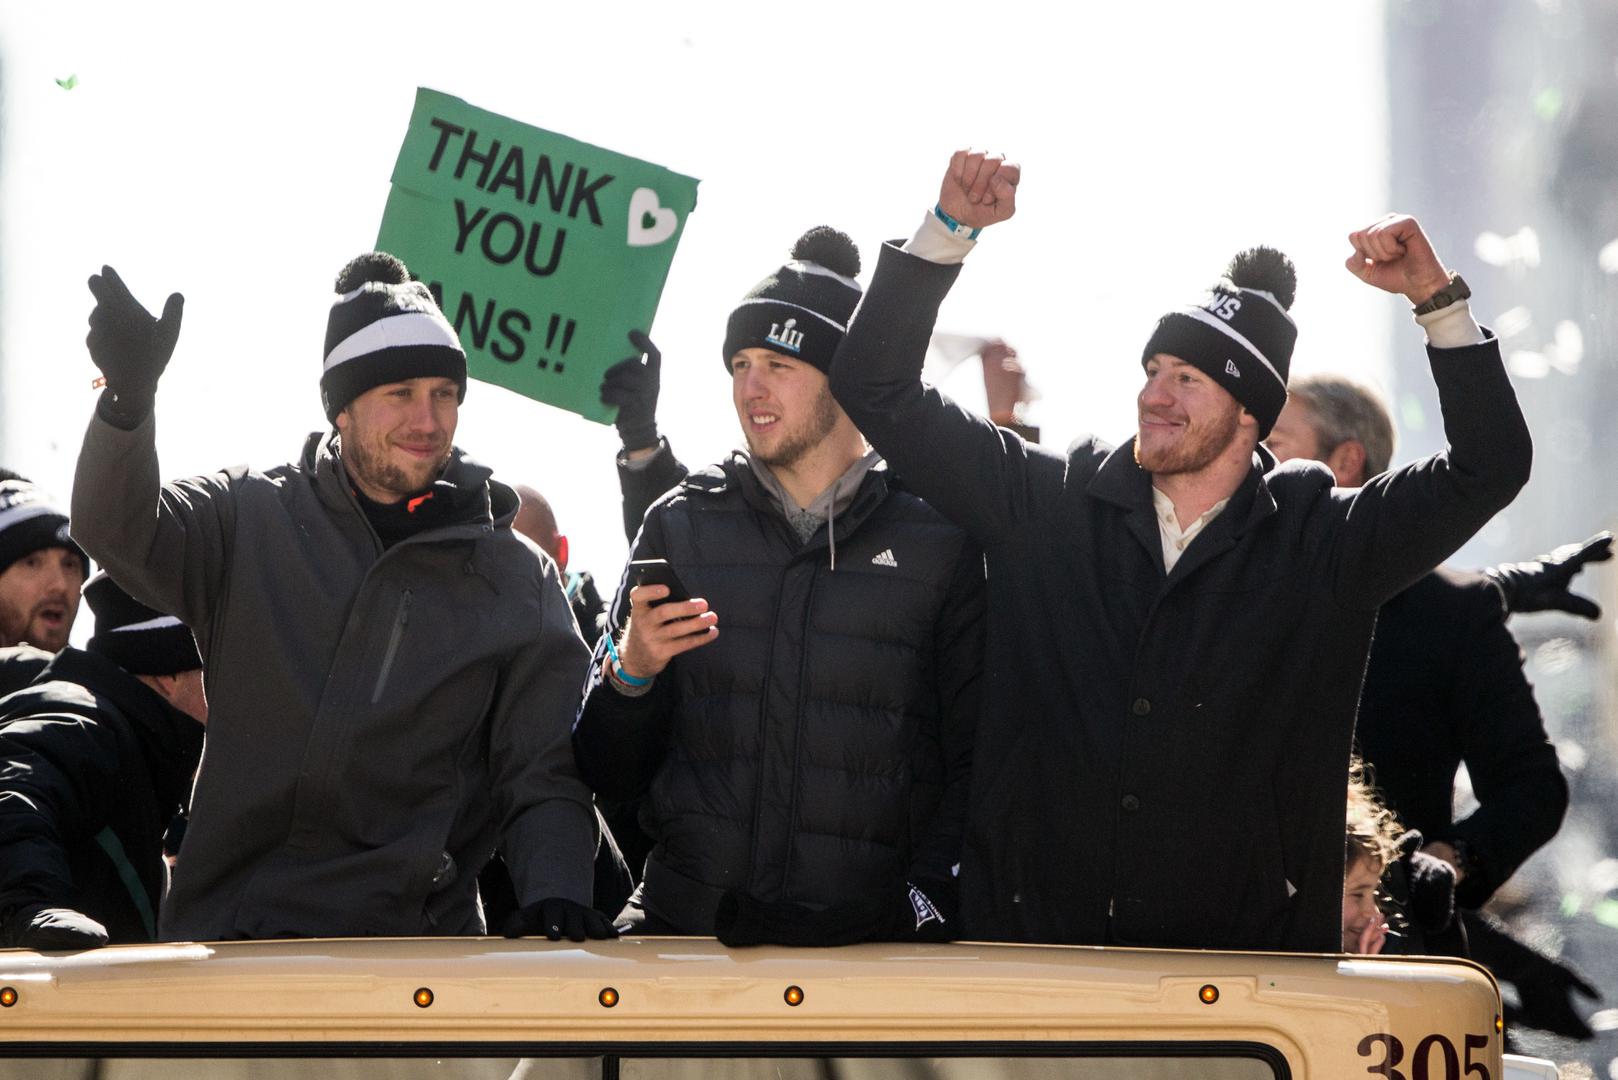 Igrači Eaglesa su se pojavili u otvorenom autobusu te su pozdravljeni uz velike ovacije. Igrače je predvodio Nick Foles, najkorisniji igrač Super Bowla, koji je nekoliko utakmica uoči doigravanja zamijenio prvog quarterbacka Carsona Wentza